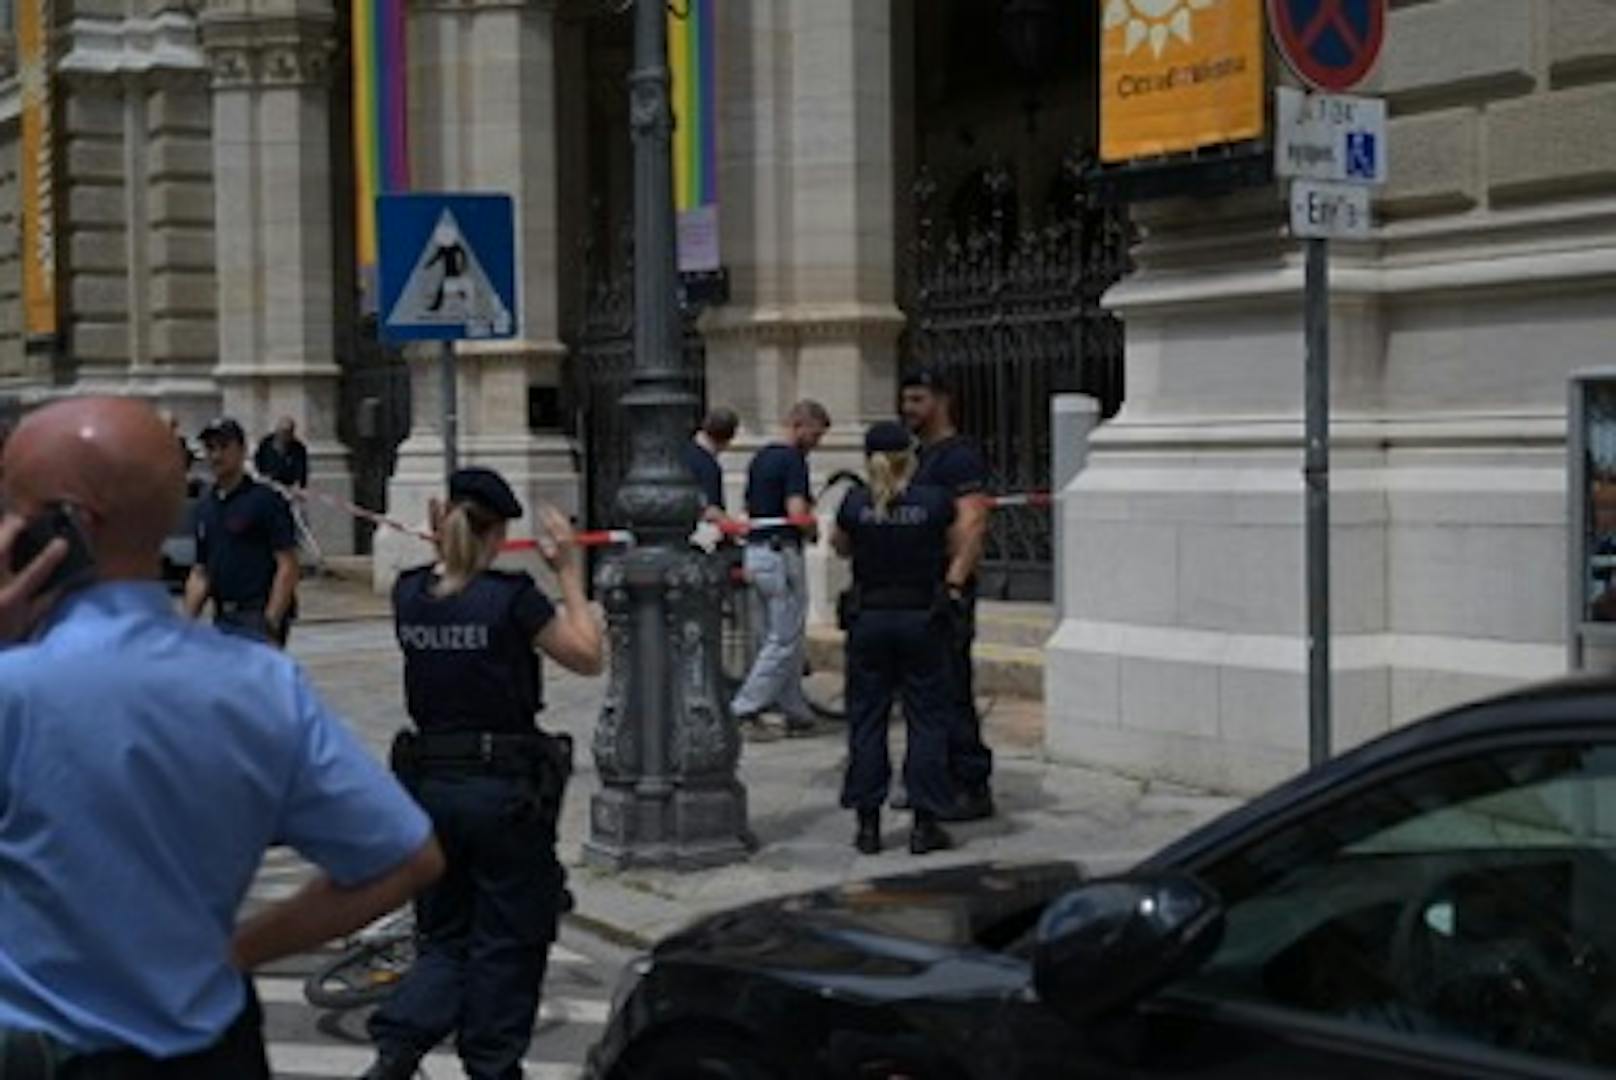 Ein Mann radelte zum Wiener Rathaus, soll dort "Allahu Akbar" gerufen haben. Die Polizei überwältigte ihn und nahm ihn fest.<br>